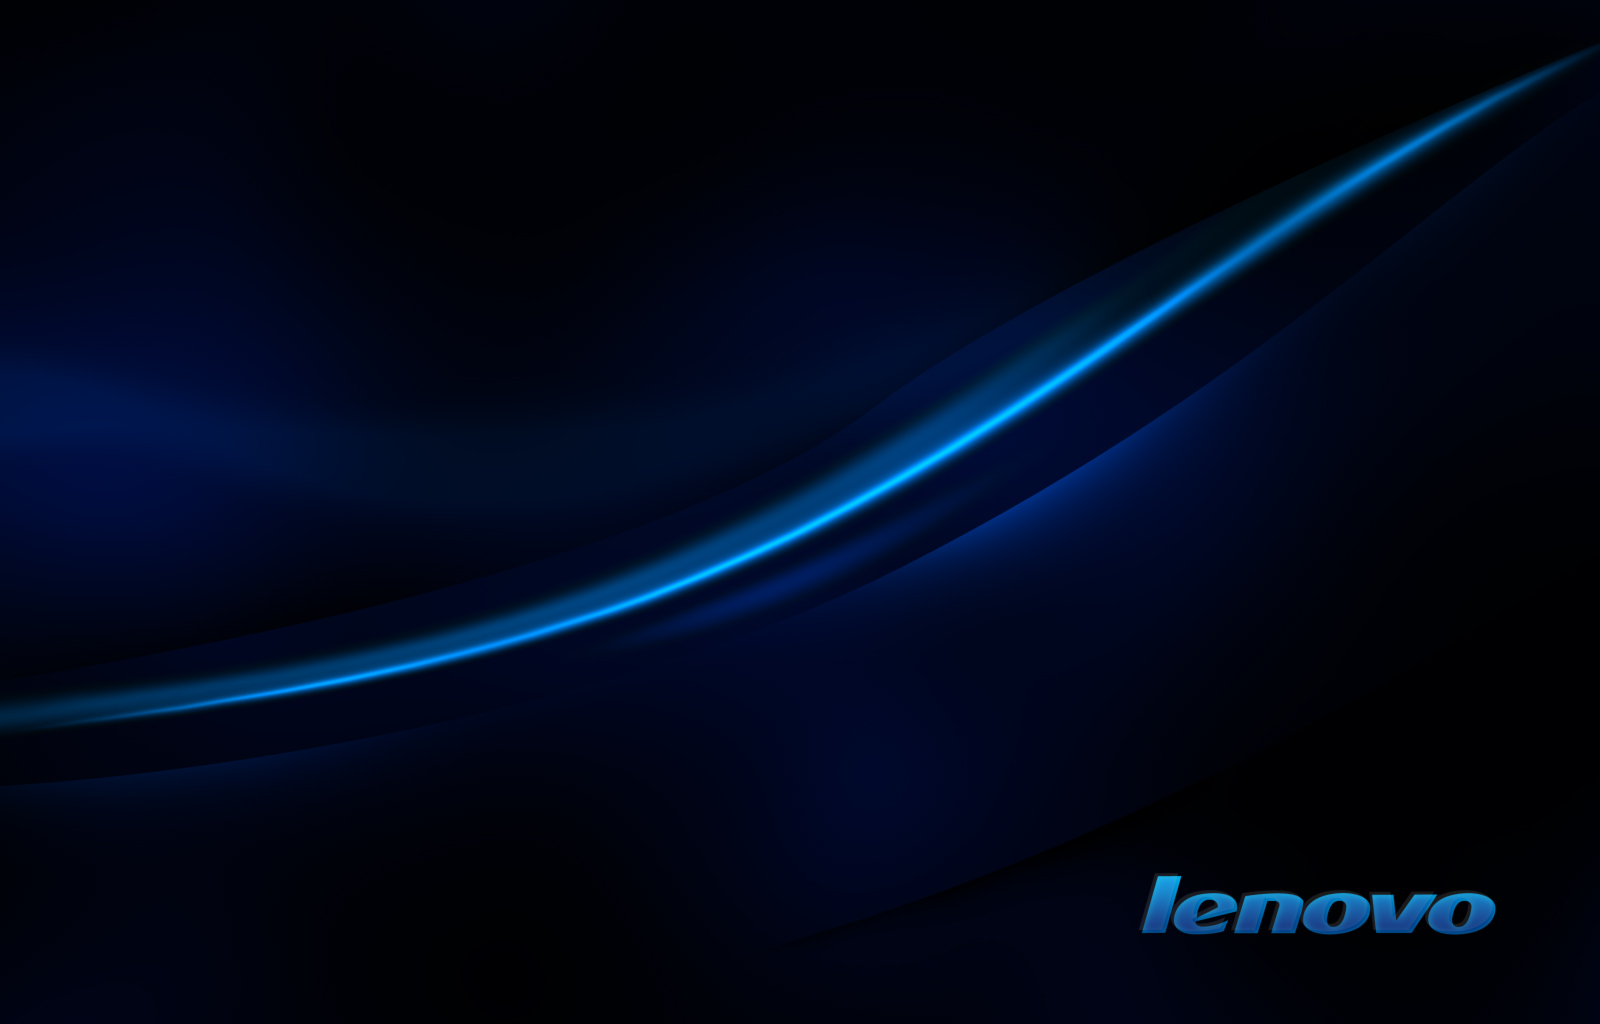 🔥 [44+] Lenovo Wallpaper 1080P | WallpaperSafari